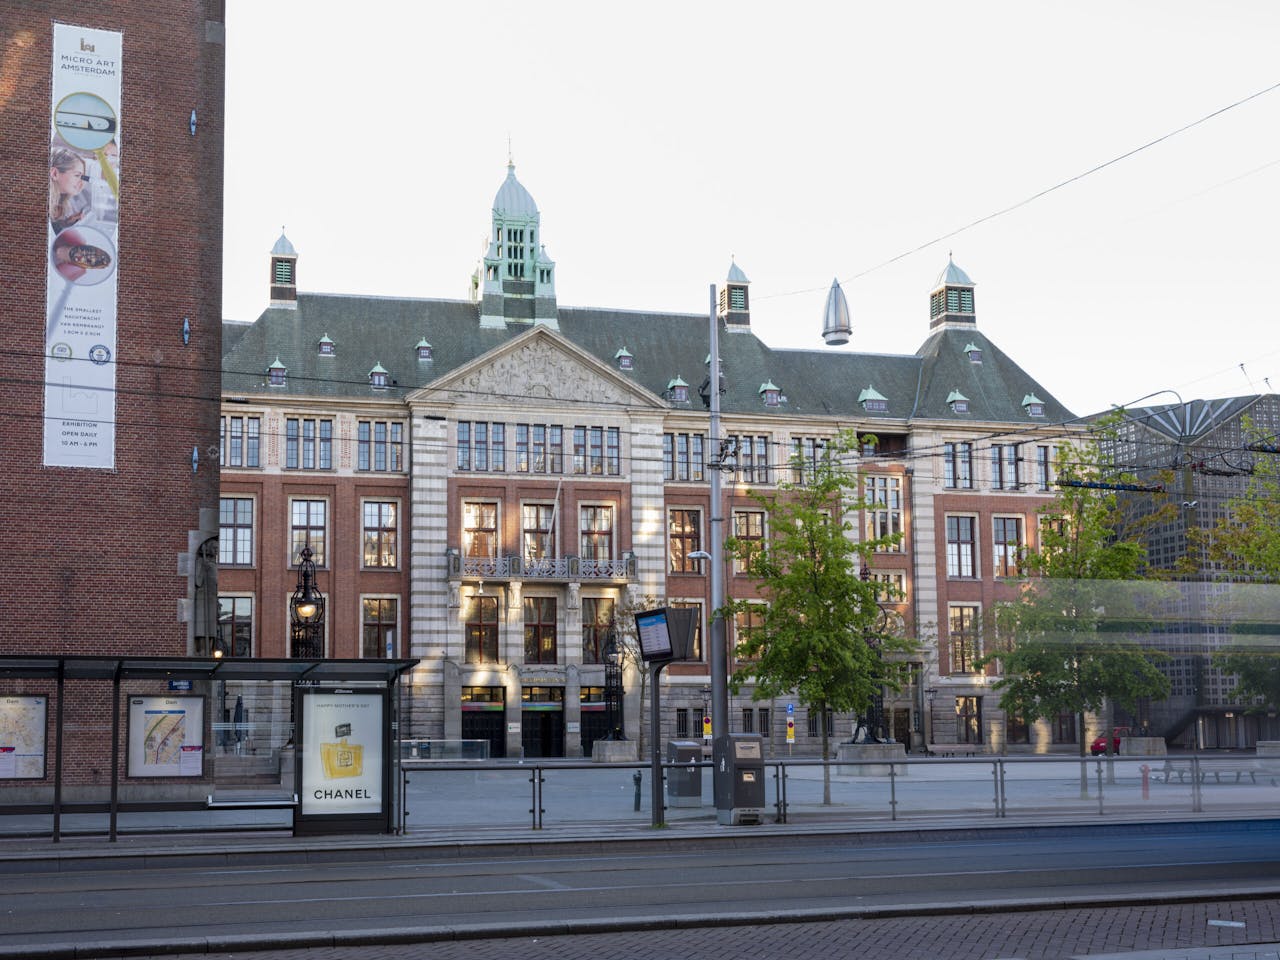 De effectenbeurs in Amsterdam, ontworpen door J. Cuypers